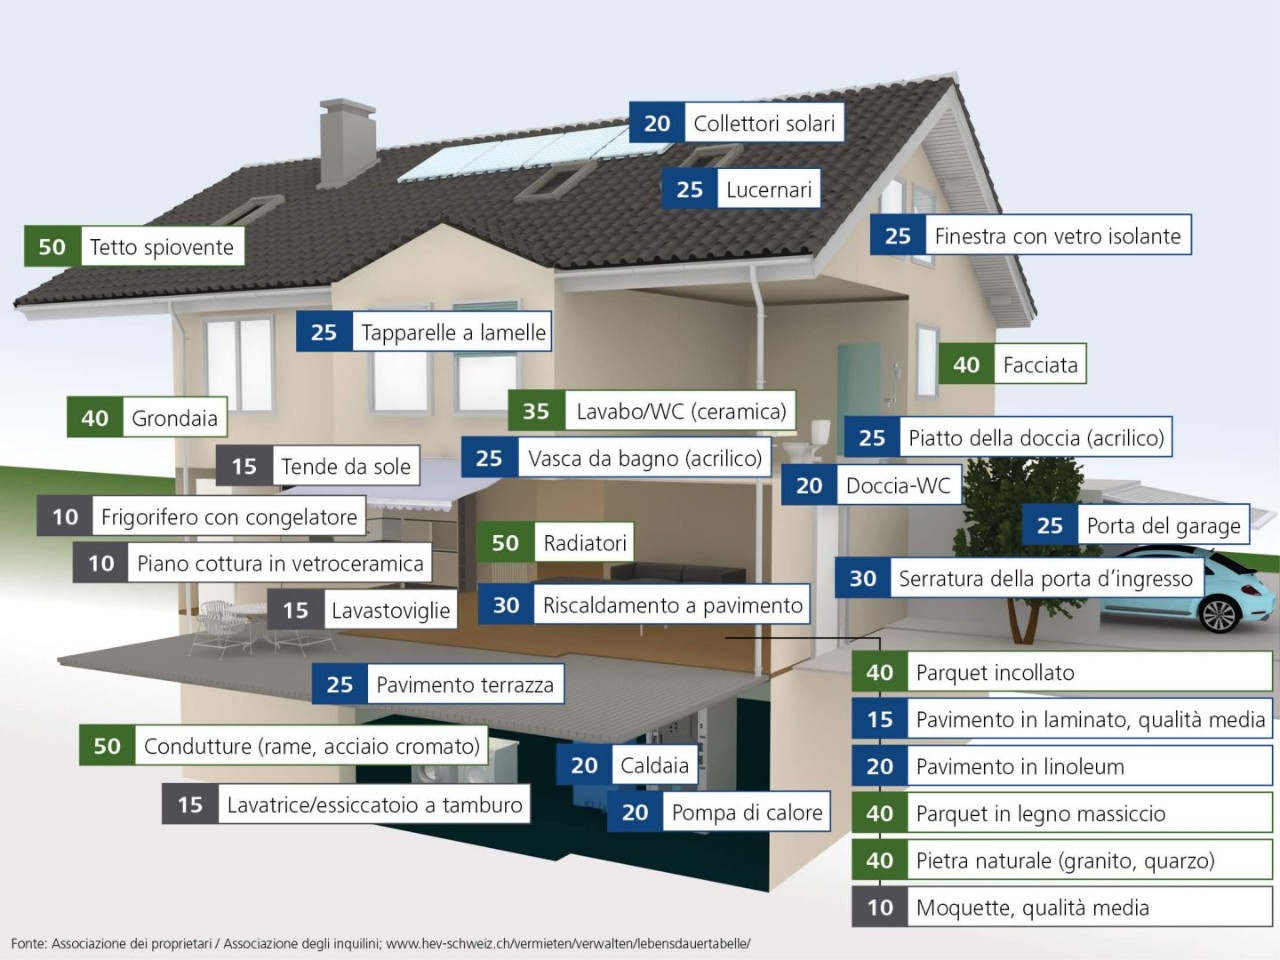 Infografica: Durata di vita dei singoli elementi costruttivi di un'immobile (durata di vita in anni).